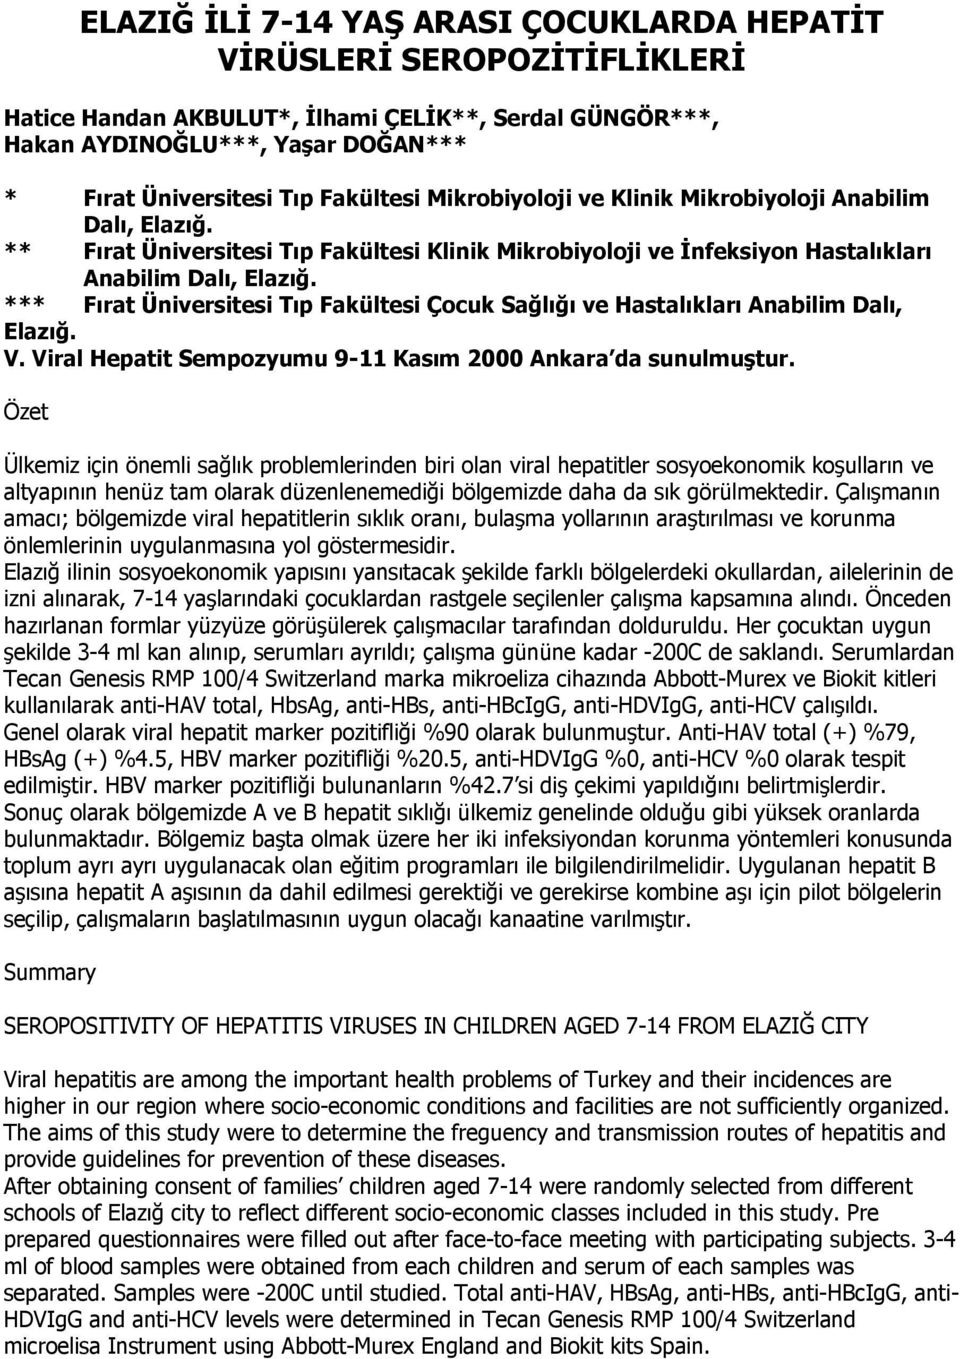 *** Fırat Üniversitesi Tıp Fakültesi Çocuk Sağlığı ve Hastalıkları Anabilim Dalı, Elazığ. V. Viral Hepatit Sempozyumu 9-11 Kasım 2000 Ankara da sunulmuştur.